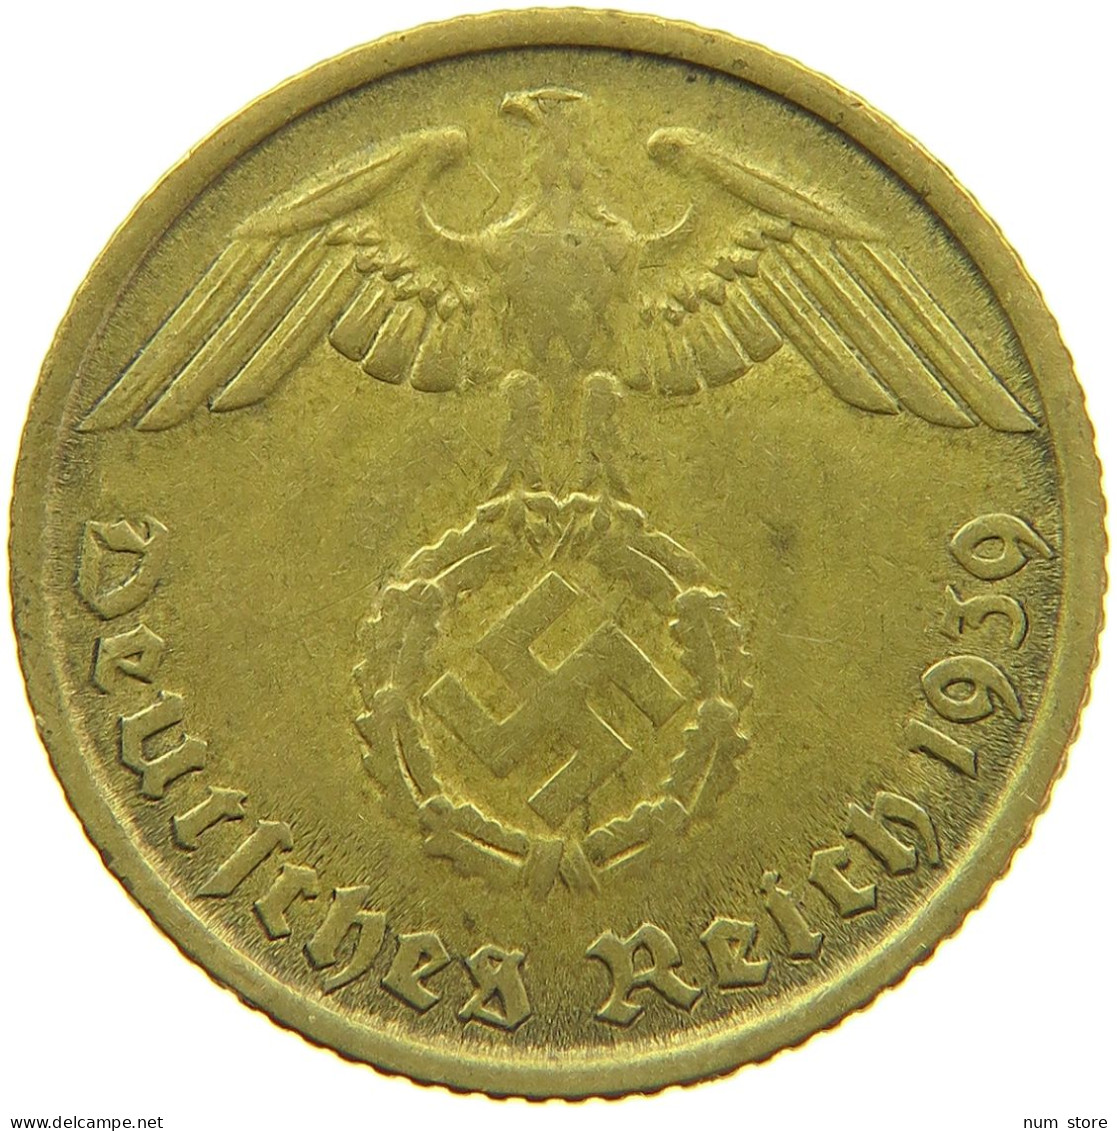 GERMANY 10 REICHSPFENNIG 1939 B #s095 0149 - 10 Reichspfennig